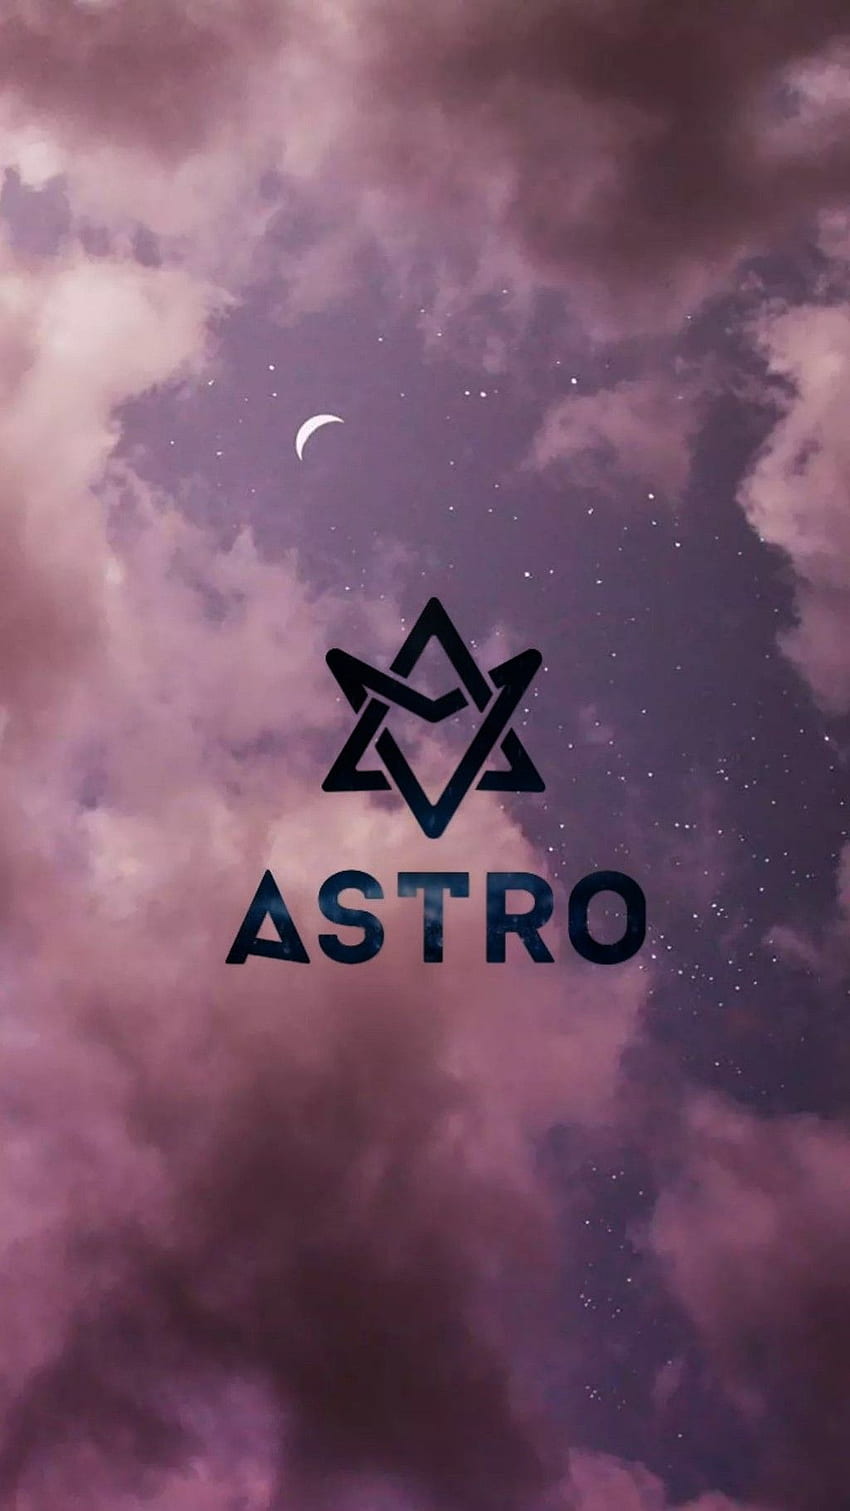 ASTRO 아스트로 . Astro, Lukisan galaksi, ponsel, Astro Aroha HD phone wallpaper